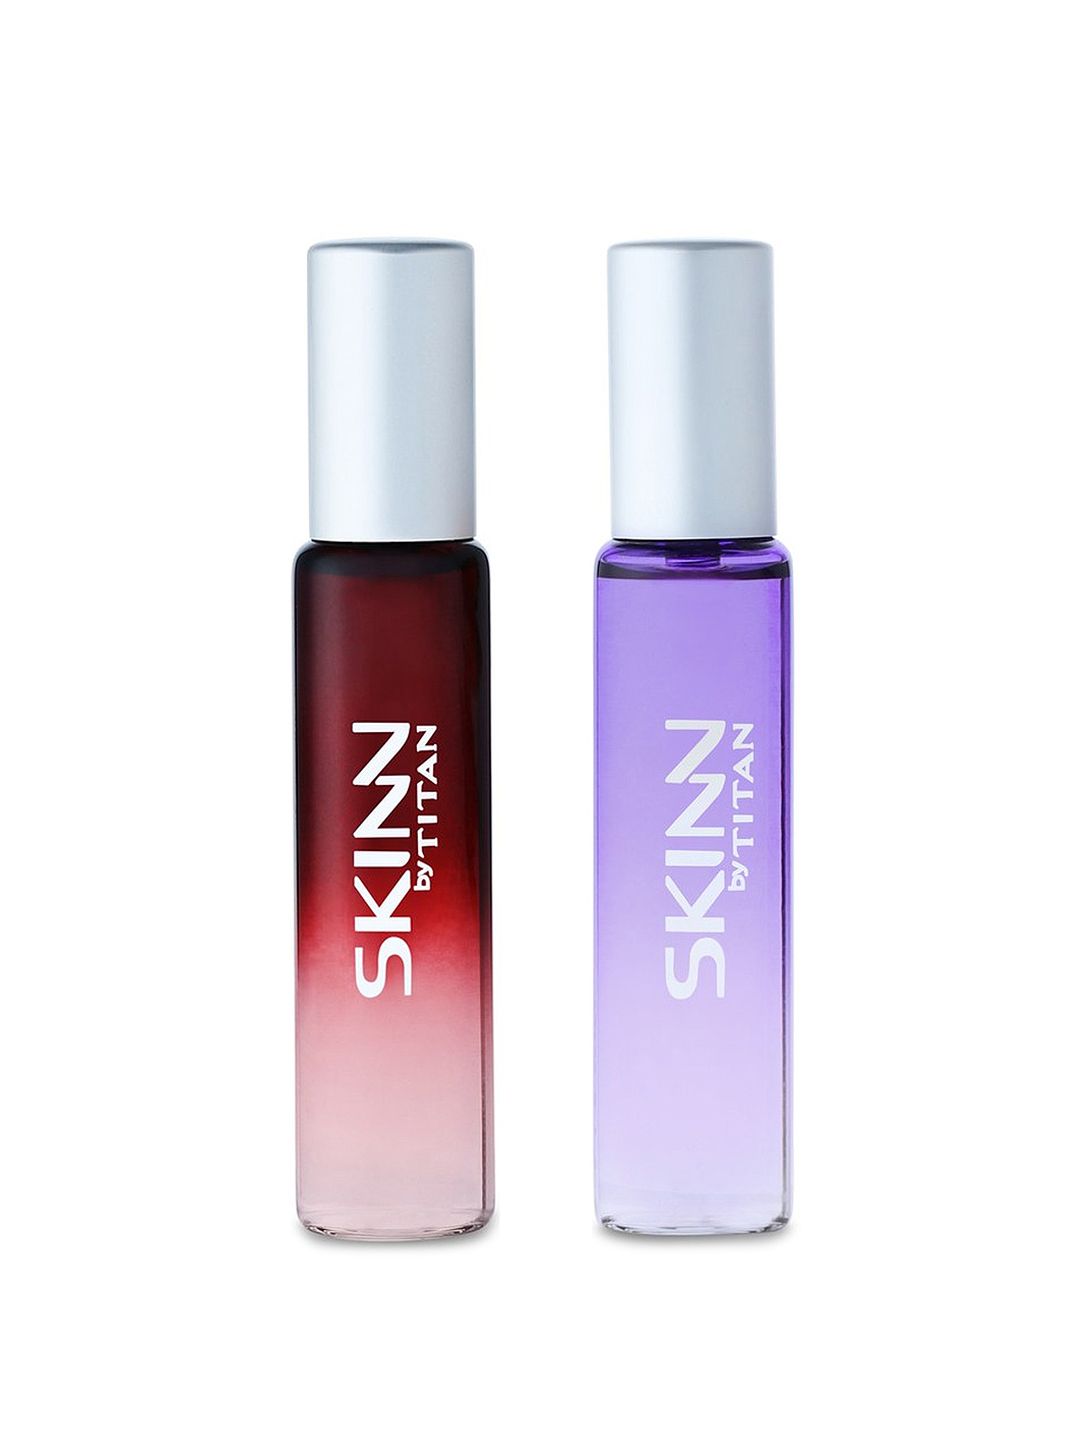 SKINN by Titan Set of 2 Eau De Parfums- Nude & Sheer Price in India